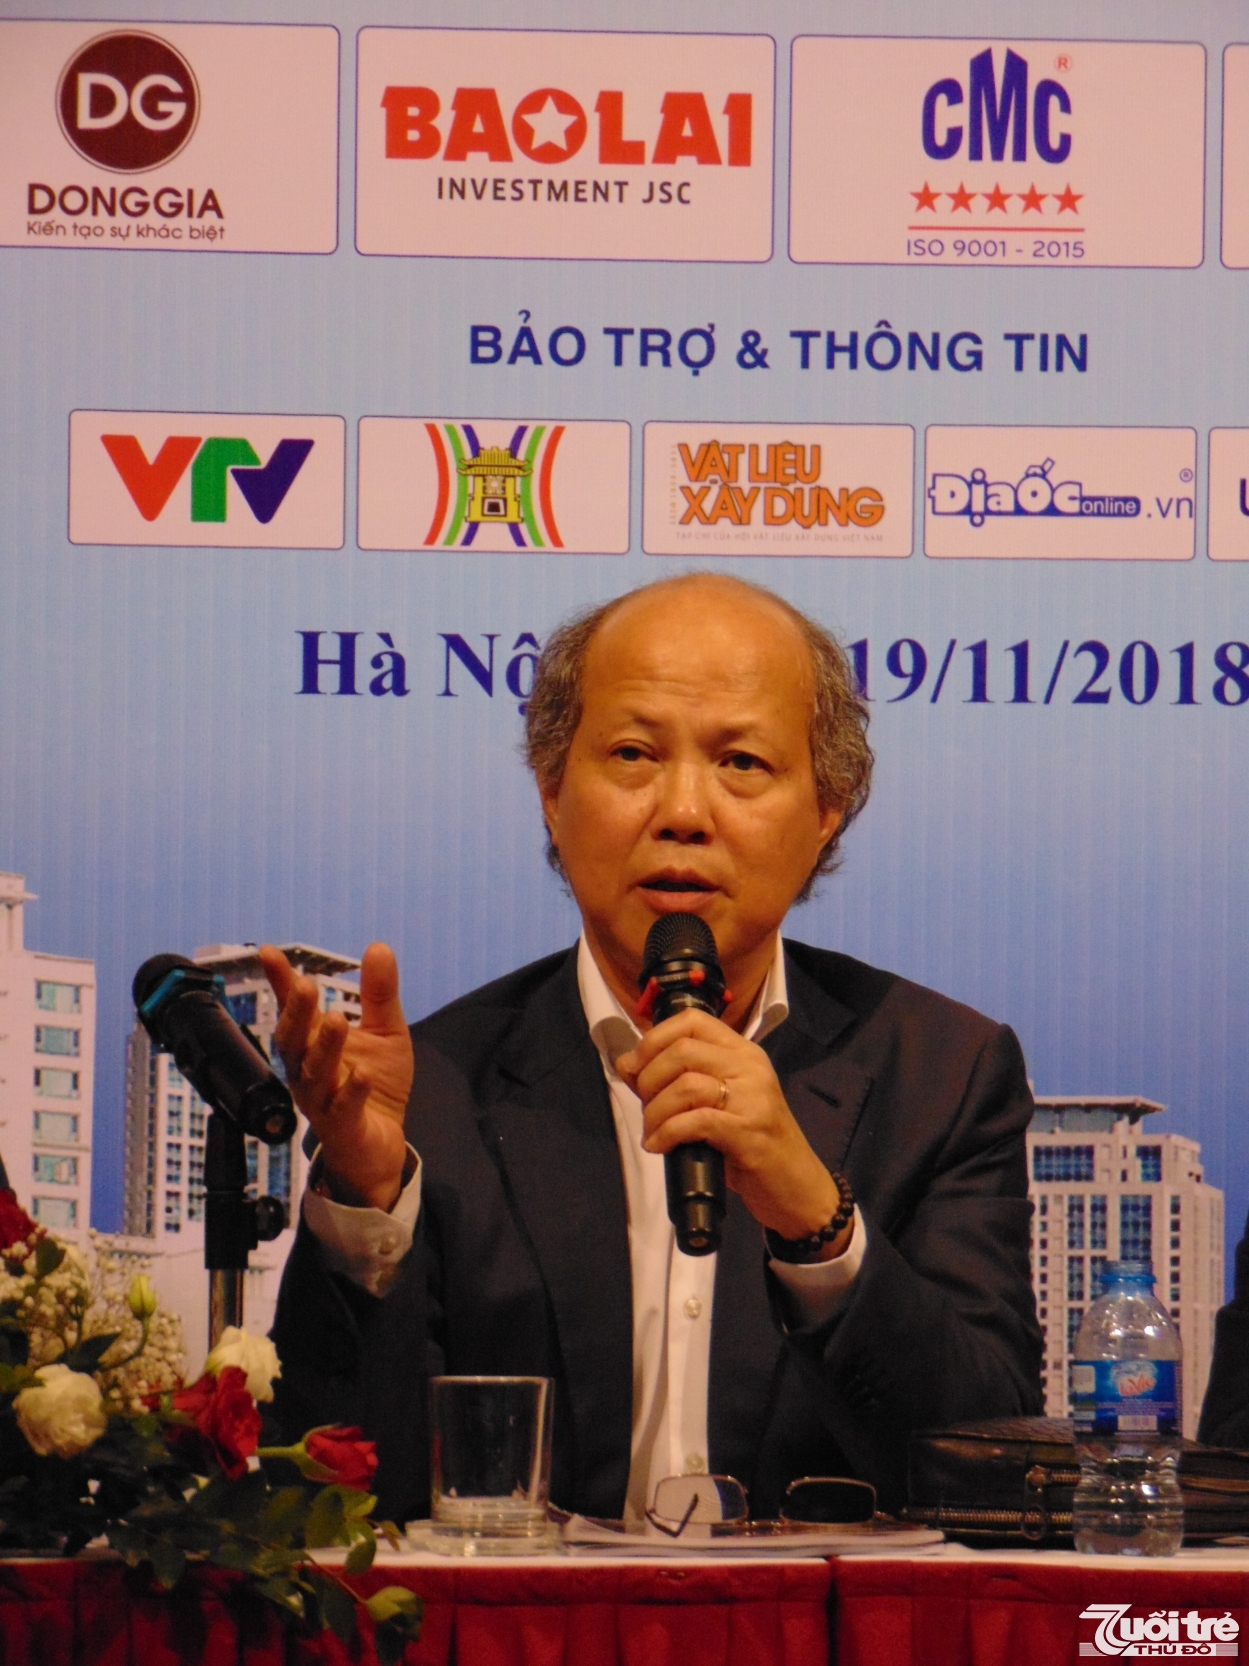 Ông Nguyễn Trần Nam, nguyên Thứ trưởng Bộ Xây dựng, Trưởng Ban Tổ chức phát biểu tại buổi họp báo